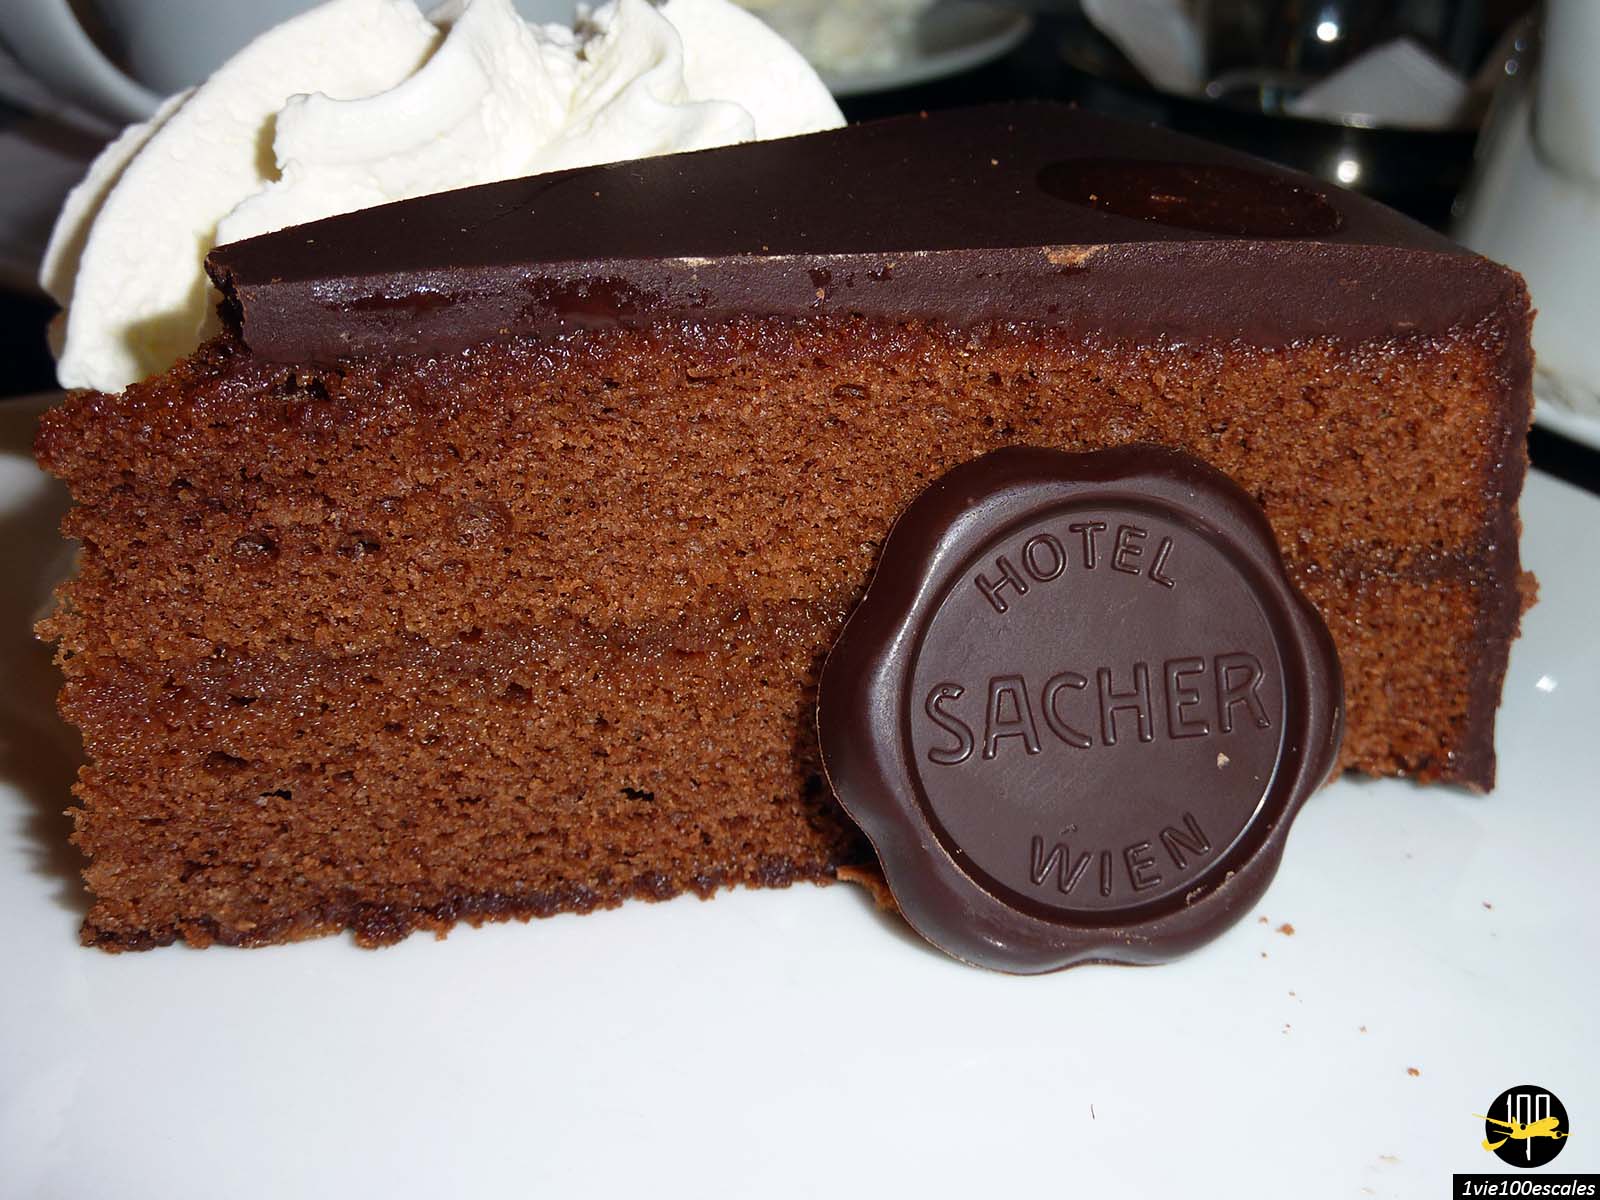 L'une des confiseries les plus célèbres de Vienne. icône de la ville, la Sachertorte est un gâteau au chocolat noir avec une confiture d'abricot au milieu, décorée d'un miroir miroitant et d'un glaçage en italique